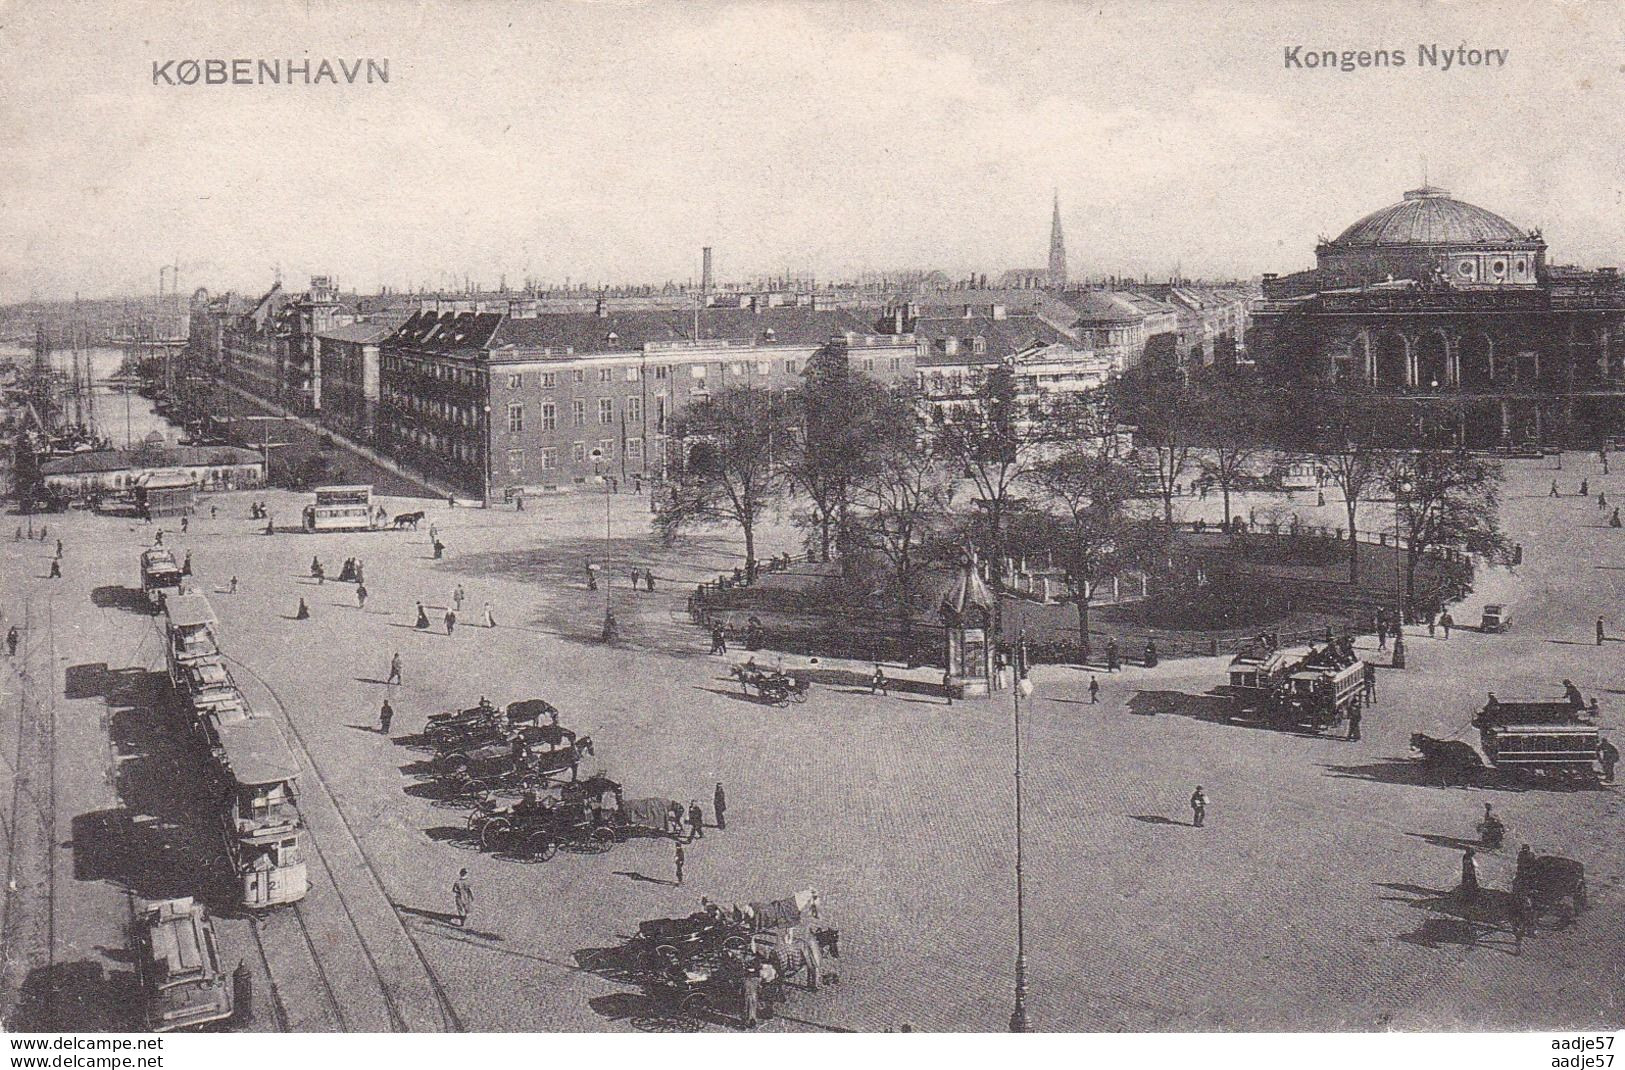 Kopenhagen Tram Kongens Nyforv - Strassenbahnen